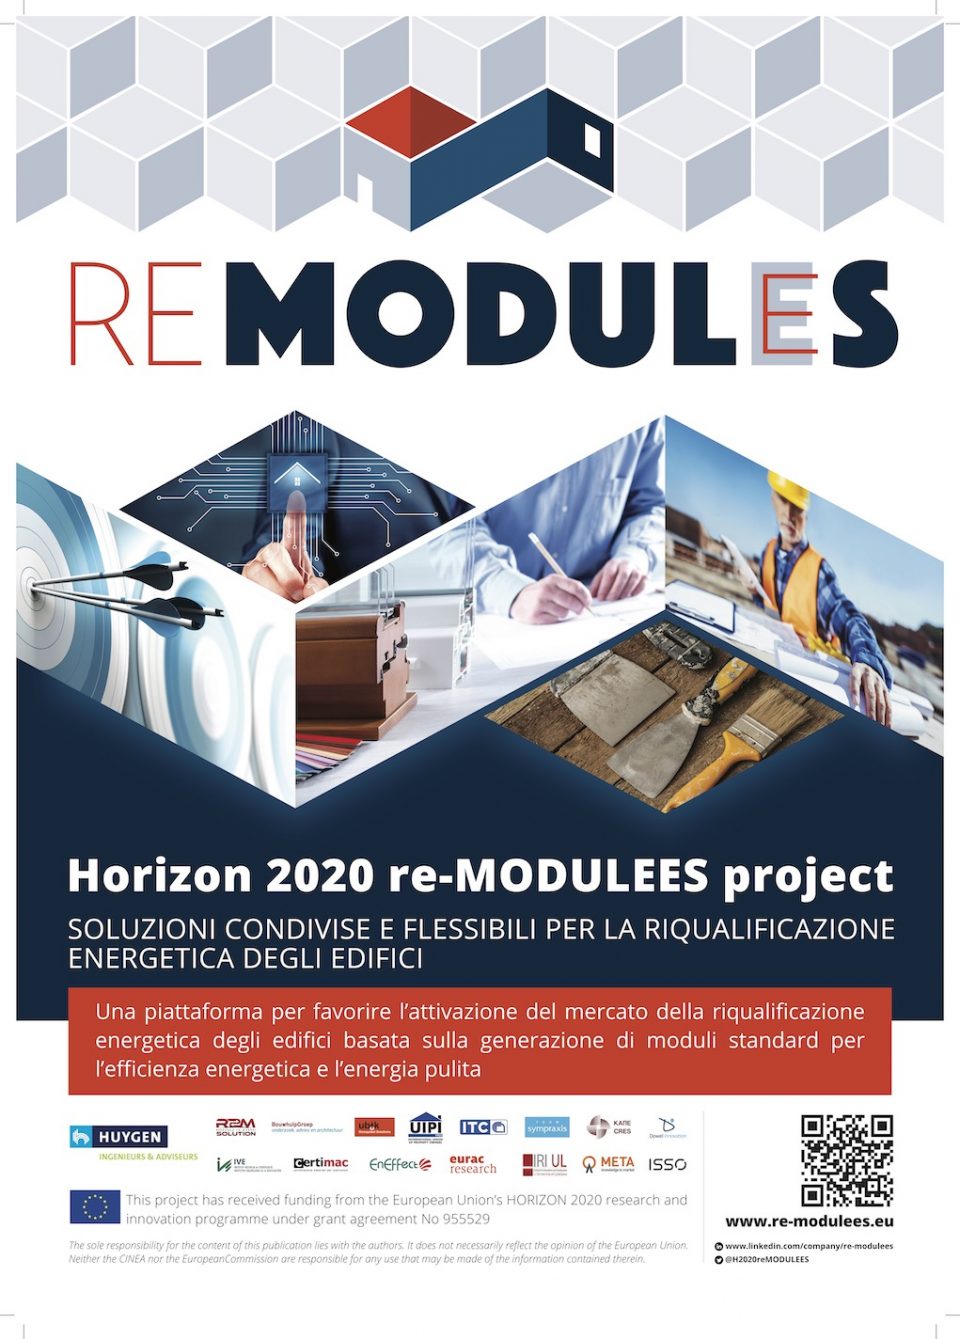 Progetto Horizon 2020 re-MODULEES, i partner descrivono il contesto, il concetto, gli obiettivi e le ambizioni del progetto.